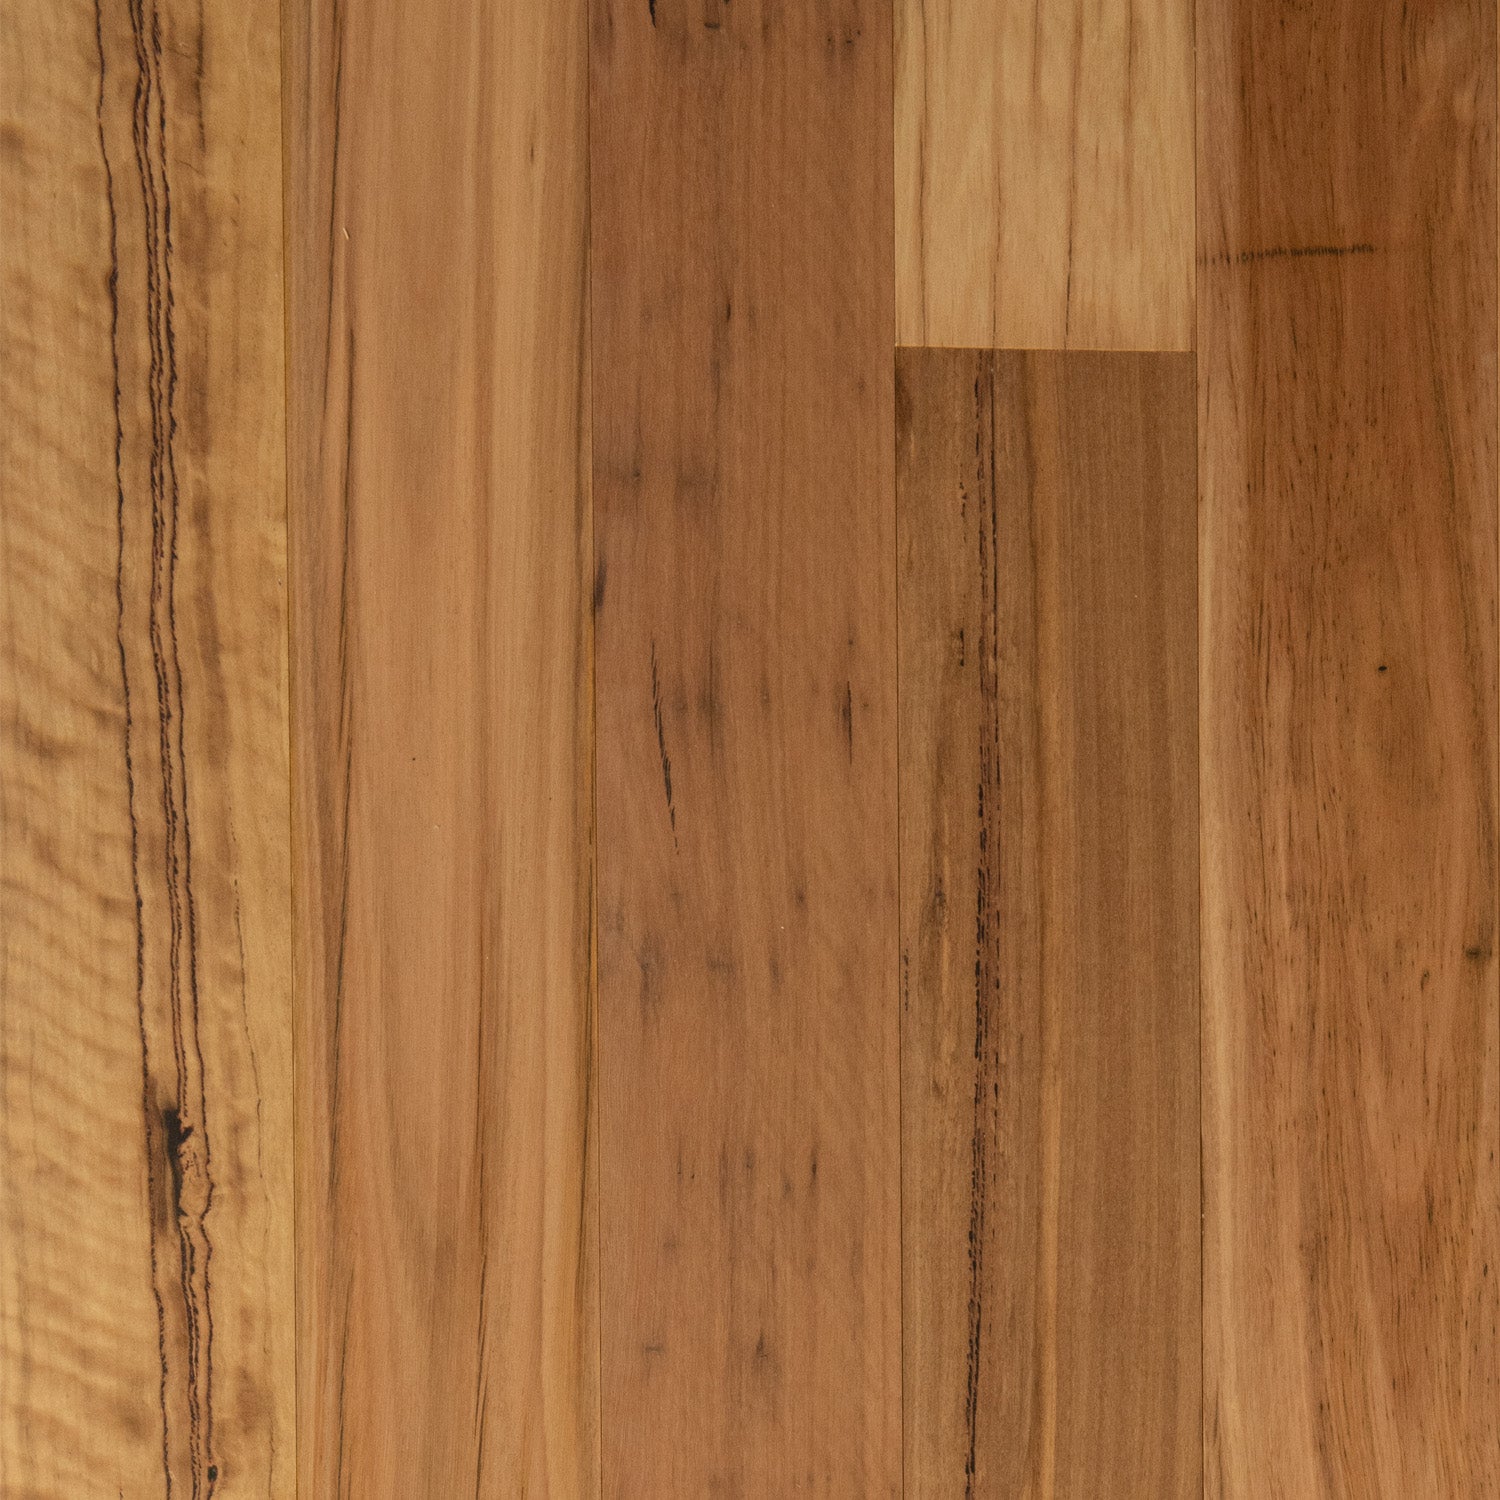 Rustic Blackbutt Timber Flooring